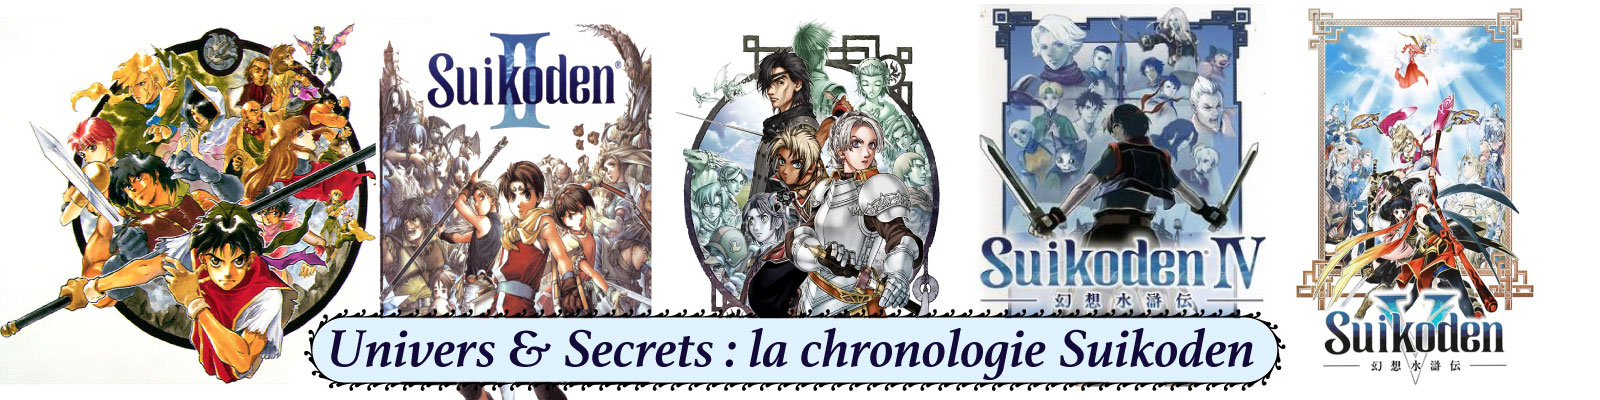 Univers-&-Secrets---la-chronologie-Suikoden-2